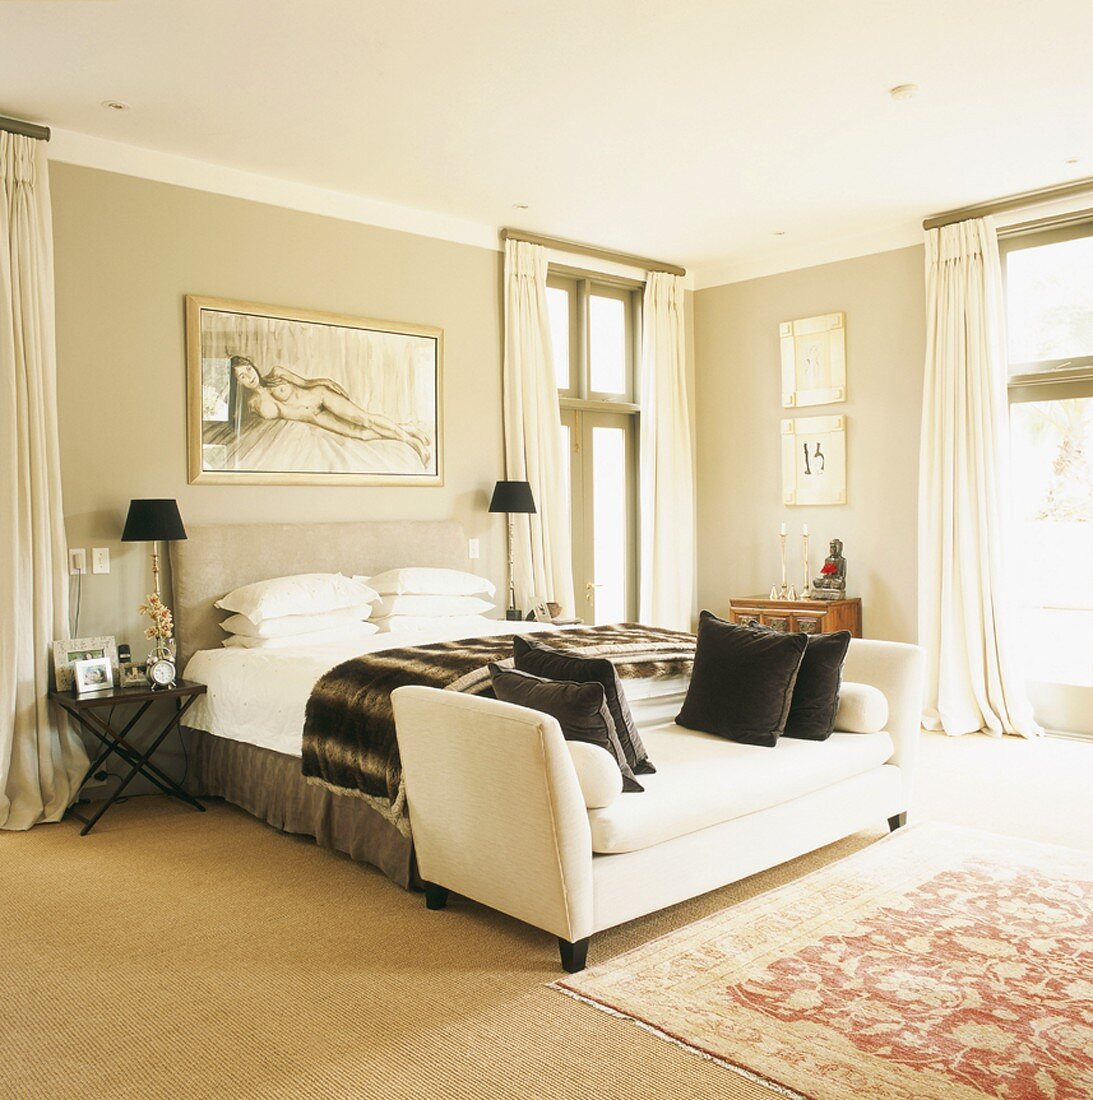 Helles Schlafzimmer Mit Einem Weißen … – Bild Kaufen – 346506 pertaining to Schlafzimmer Sofa